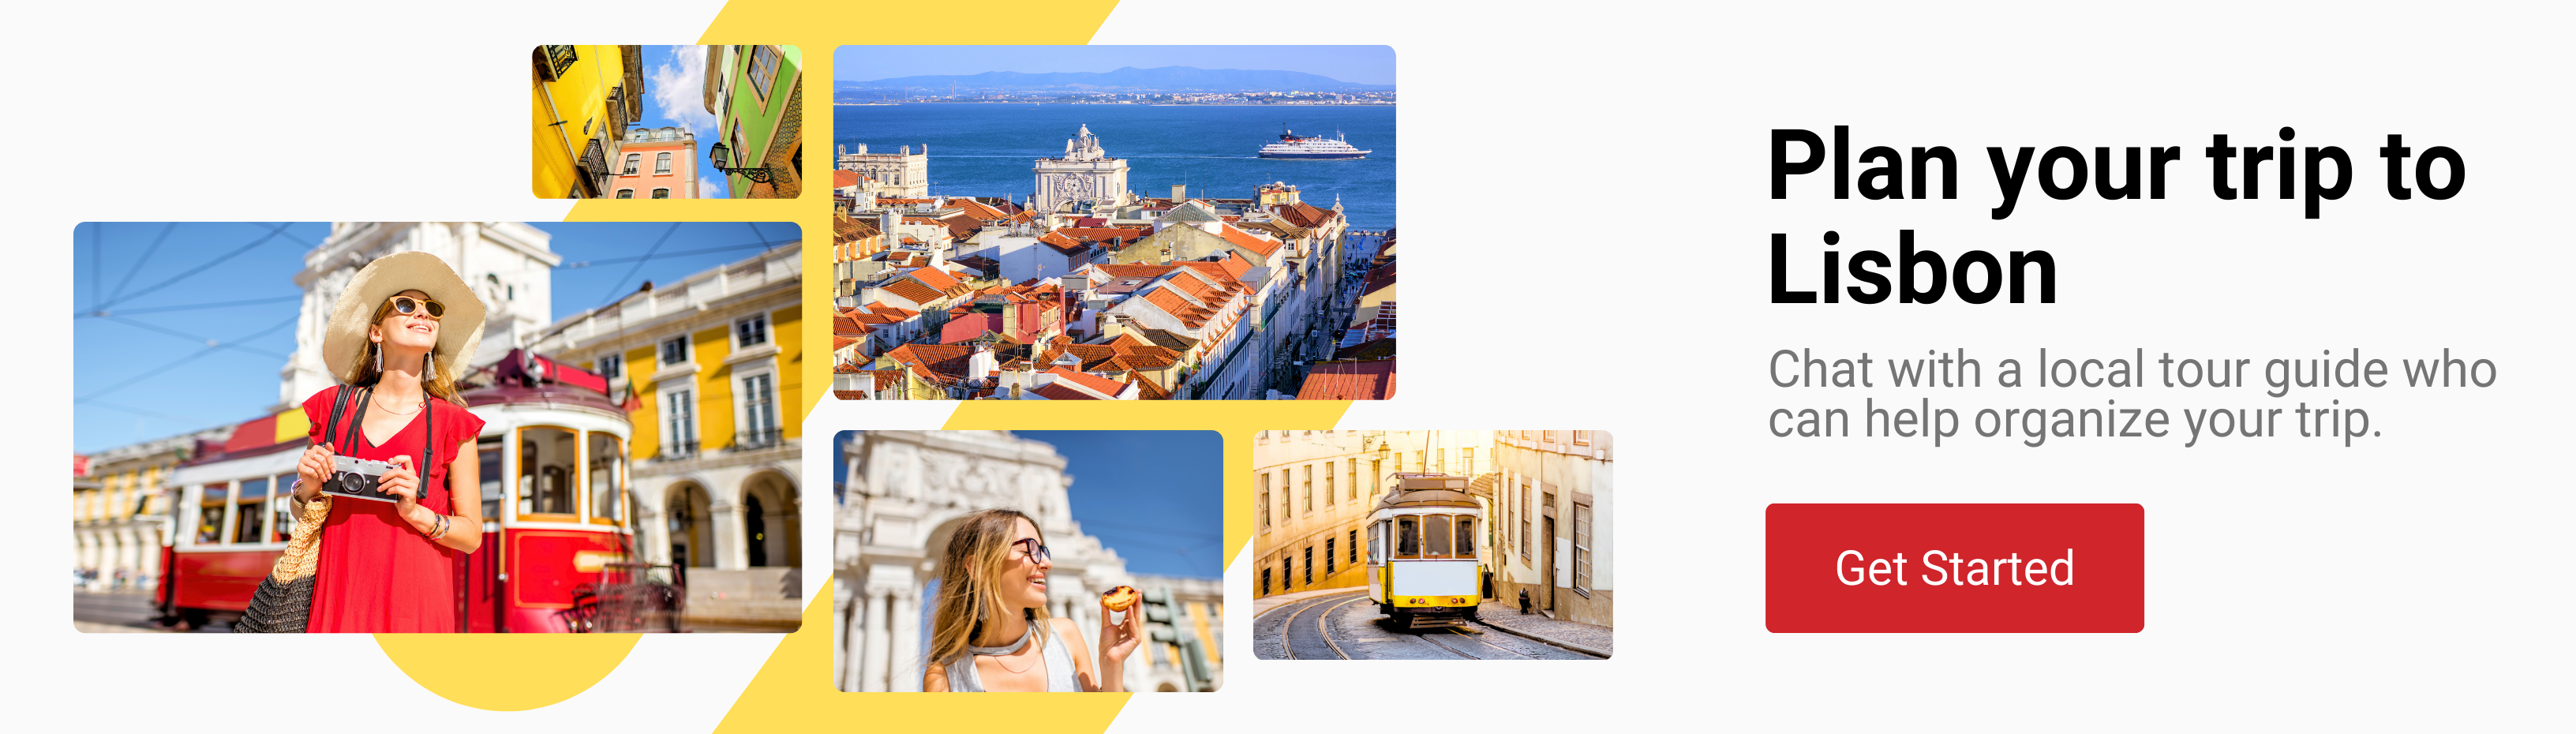 Lisbon Tour Guide